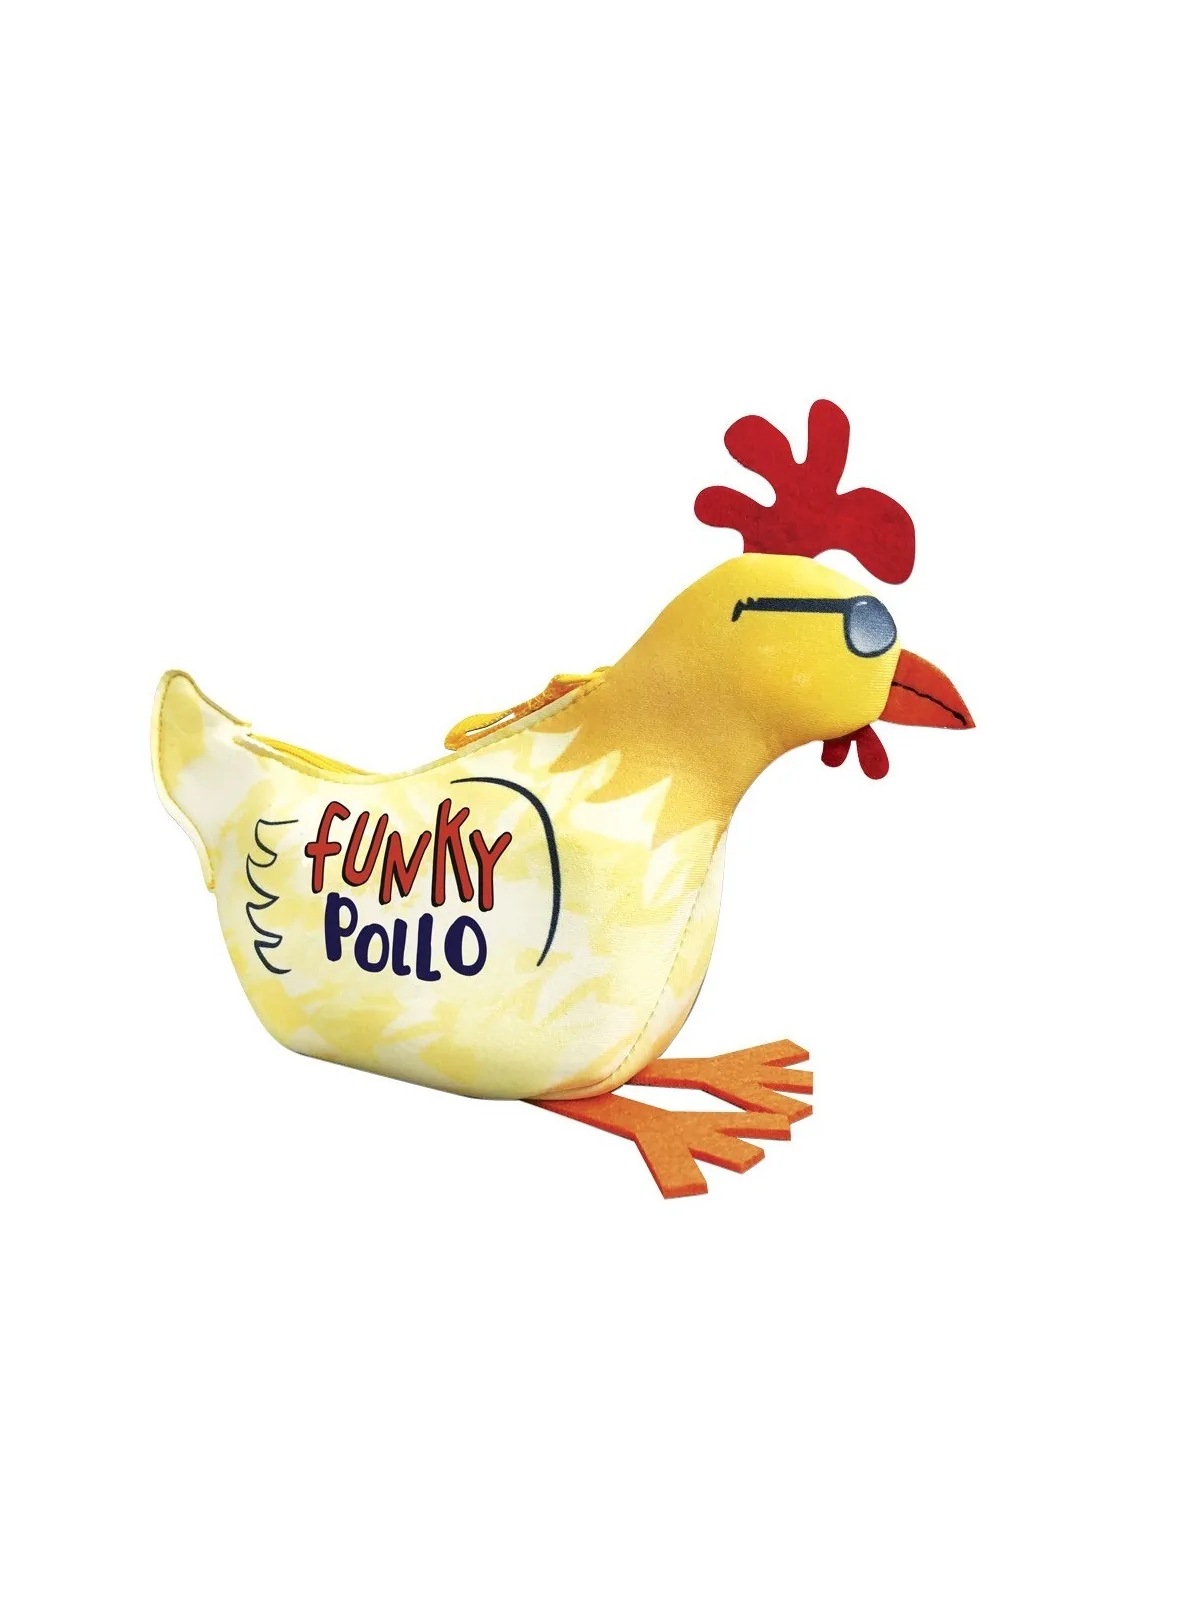 Comprar Funky Pollo barato al mejor precio 12,56 € de Mercurio Distrib